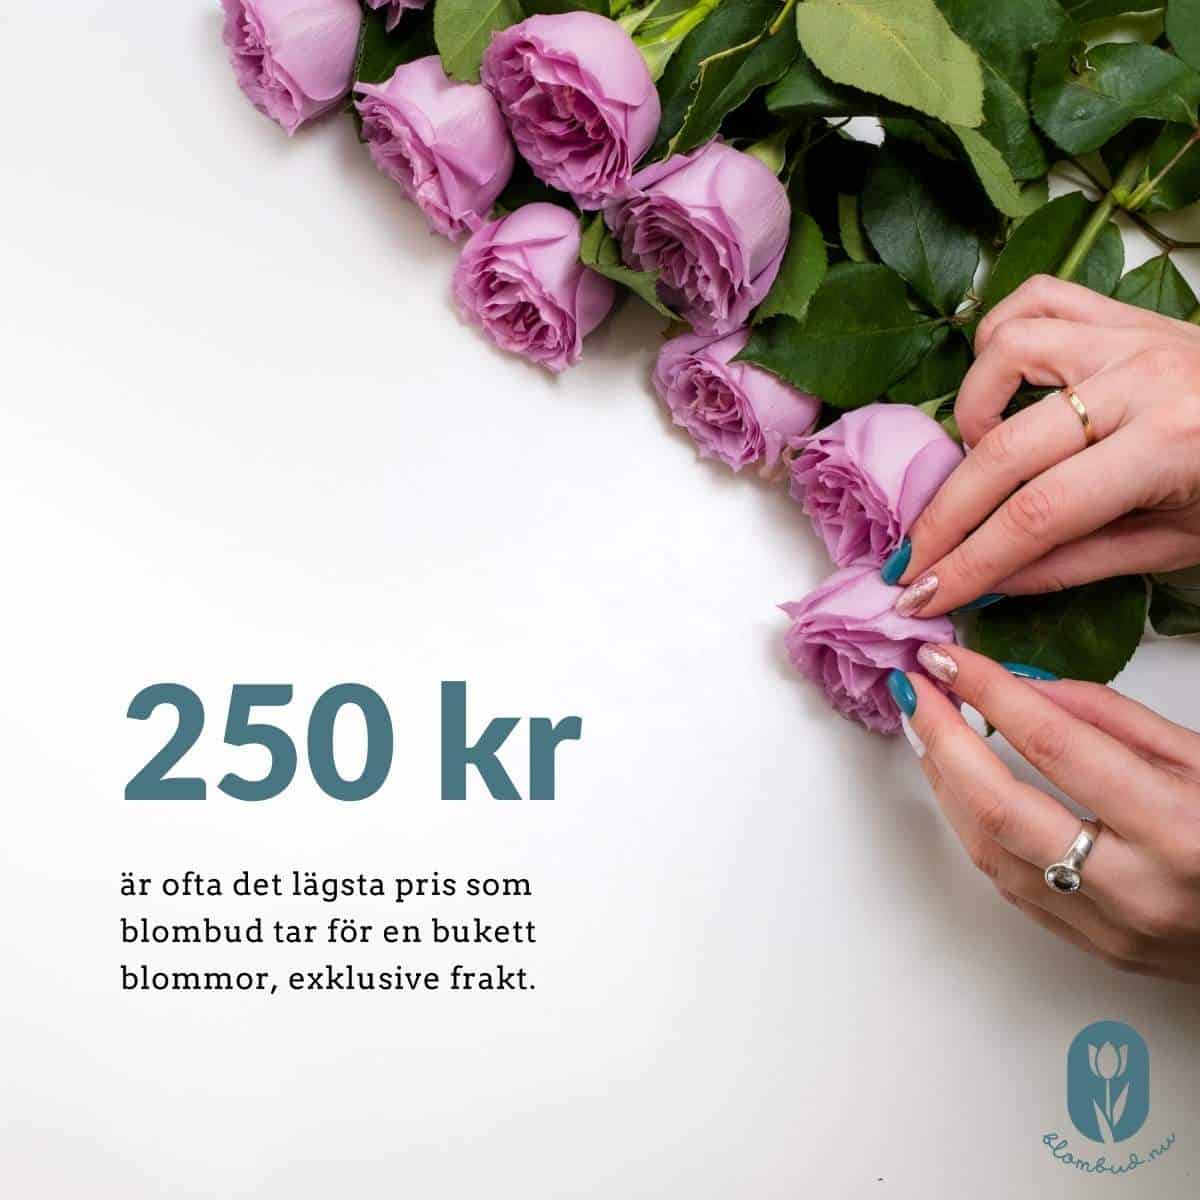 250 kr är ofta det lägsta pris som blombud tar för en bukett blommor exklusive frakt.